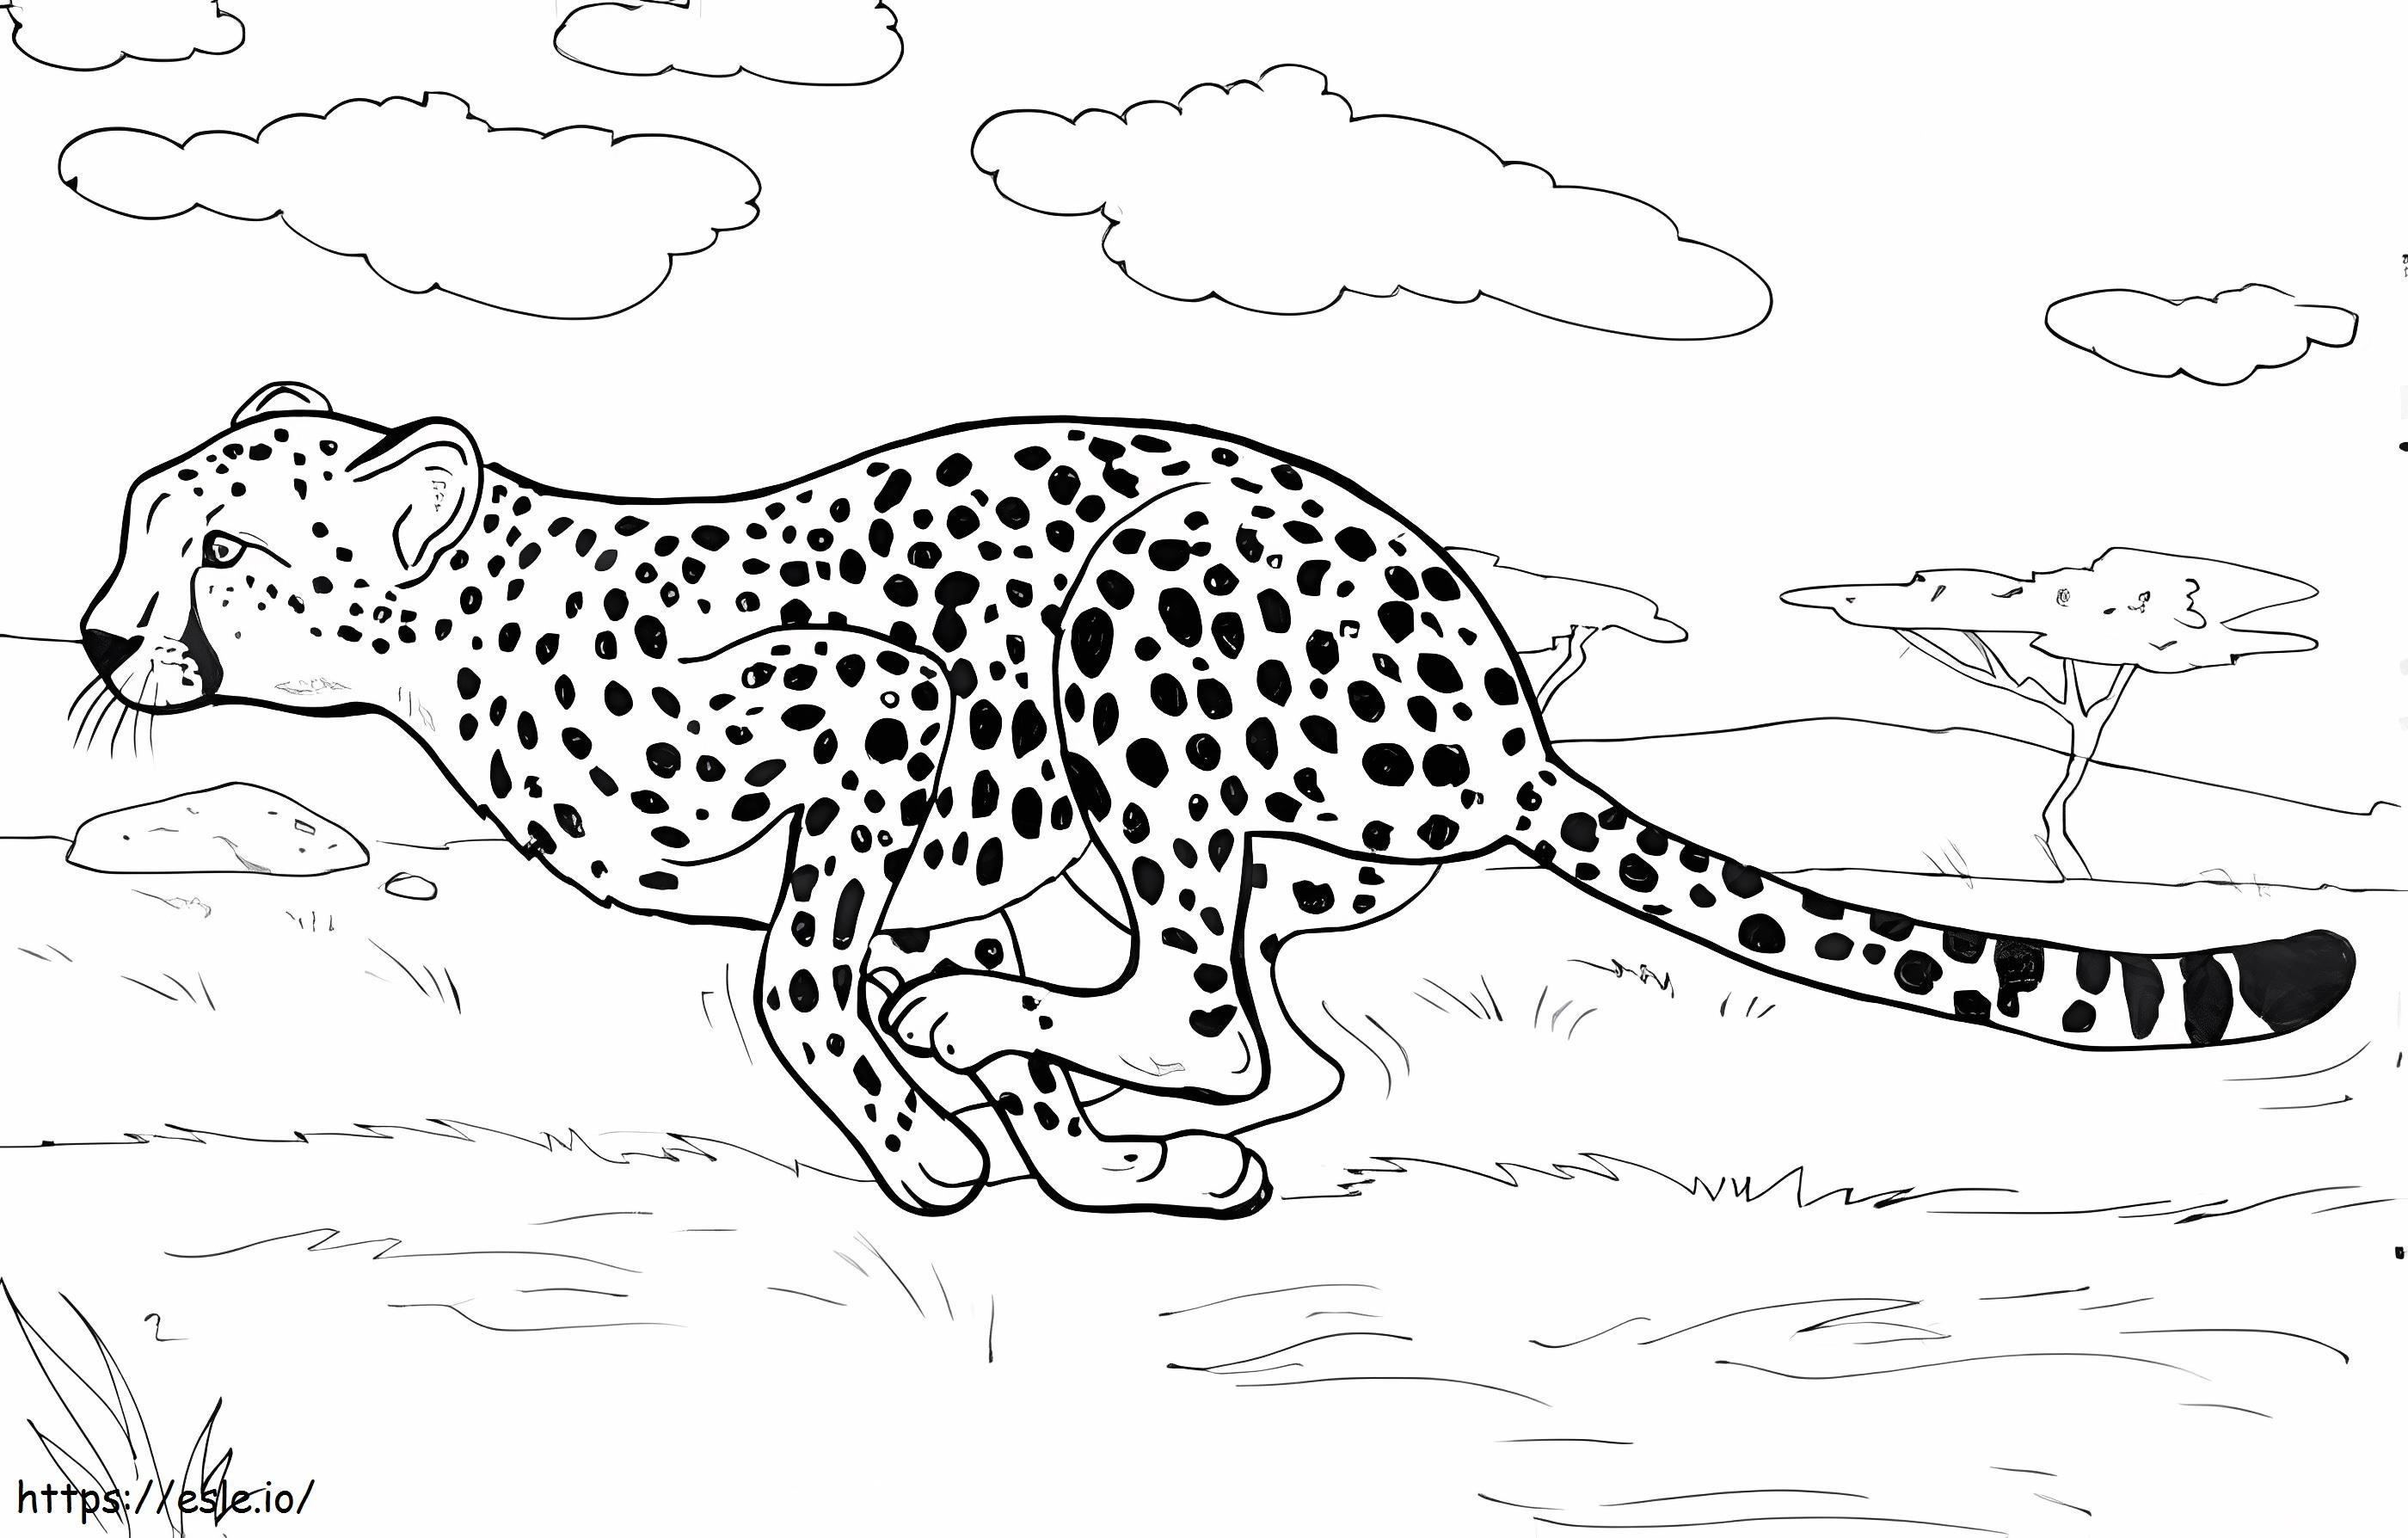 Cheetah Running coloring page